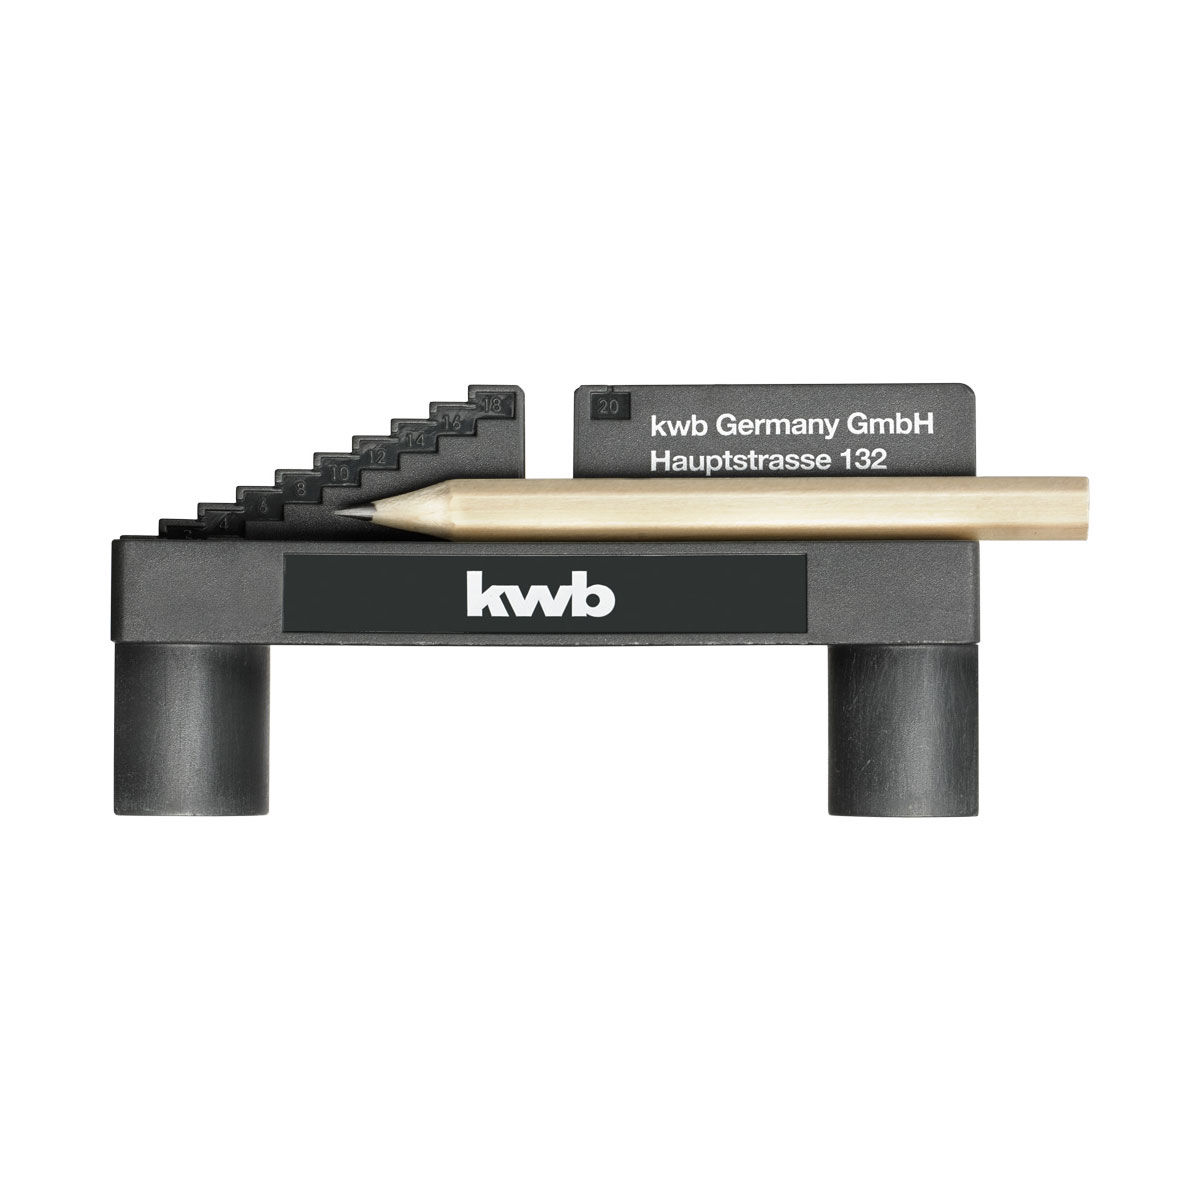 | Skala Bleistift von Anzeichenhilfe als kwb und 276616 1...20 mm. Mittenfinder metrischer mit